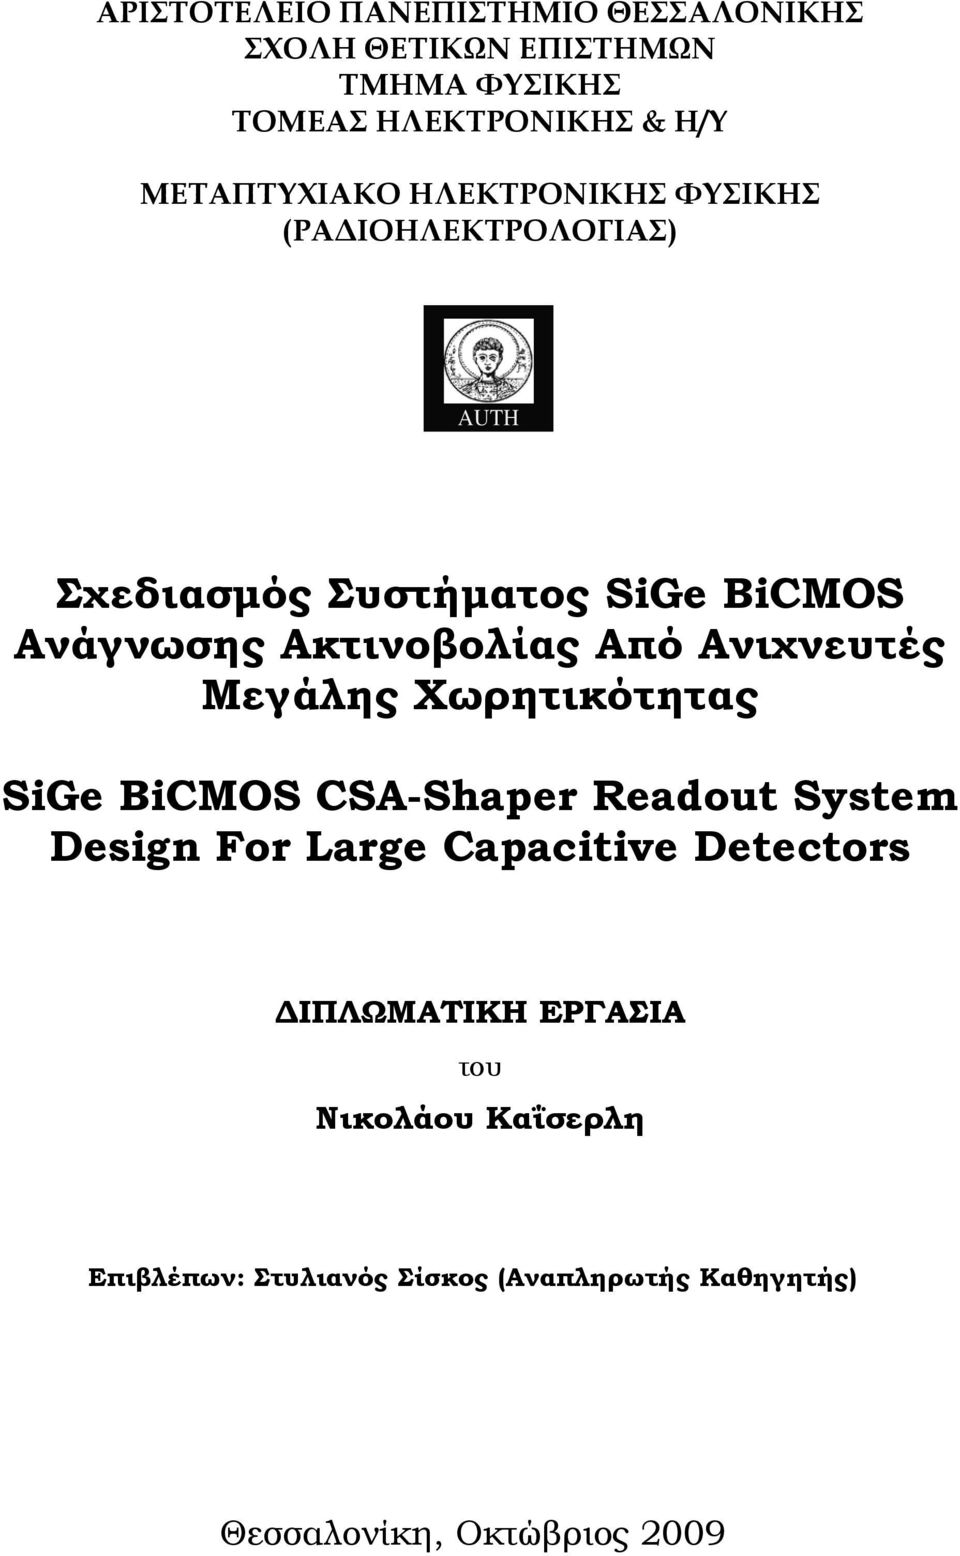 Ακτινοβολίας Από Ανιχνευτές Μεγάλης Χωρητικότητας SiGe BiCMOS CSA-Shaper Readout System Design For Large